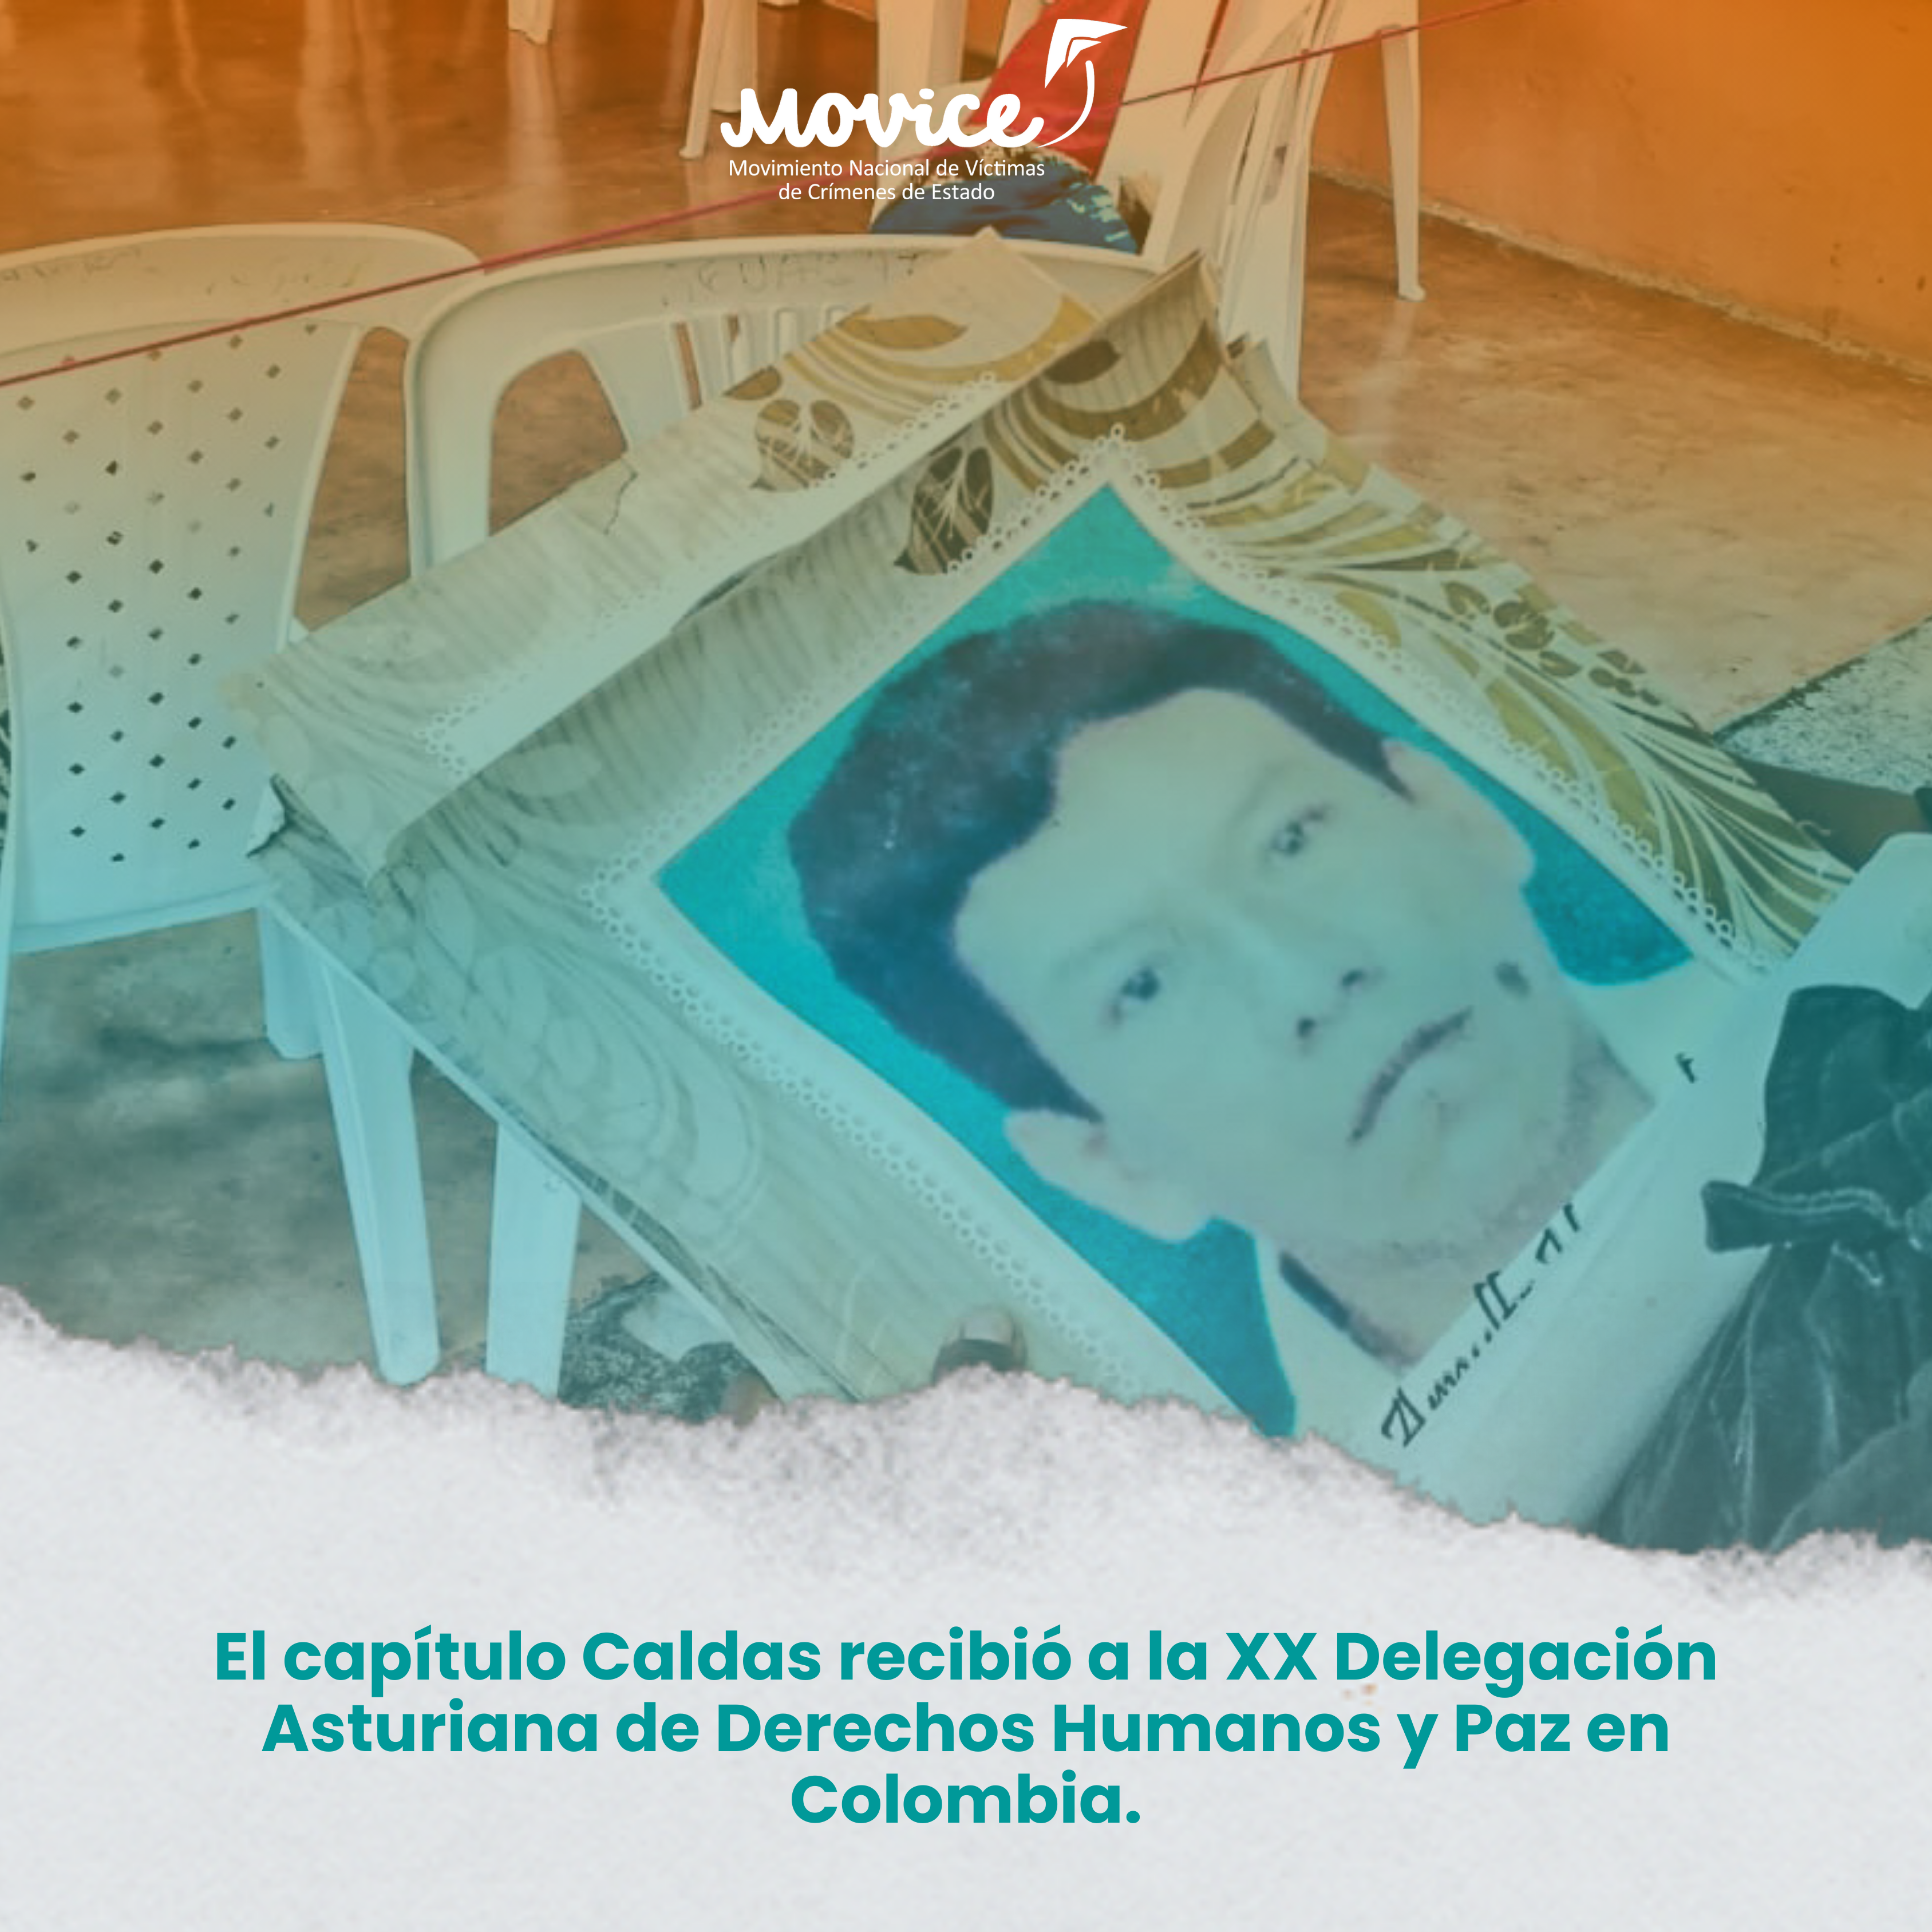 El capítulo Caldas recibió a la XX Delegación Asturiana de Derechos Humanos y Paz en Colombia.